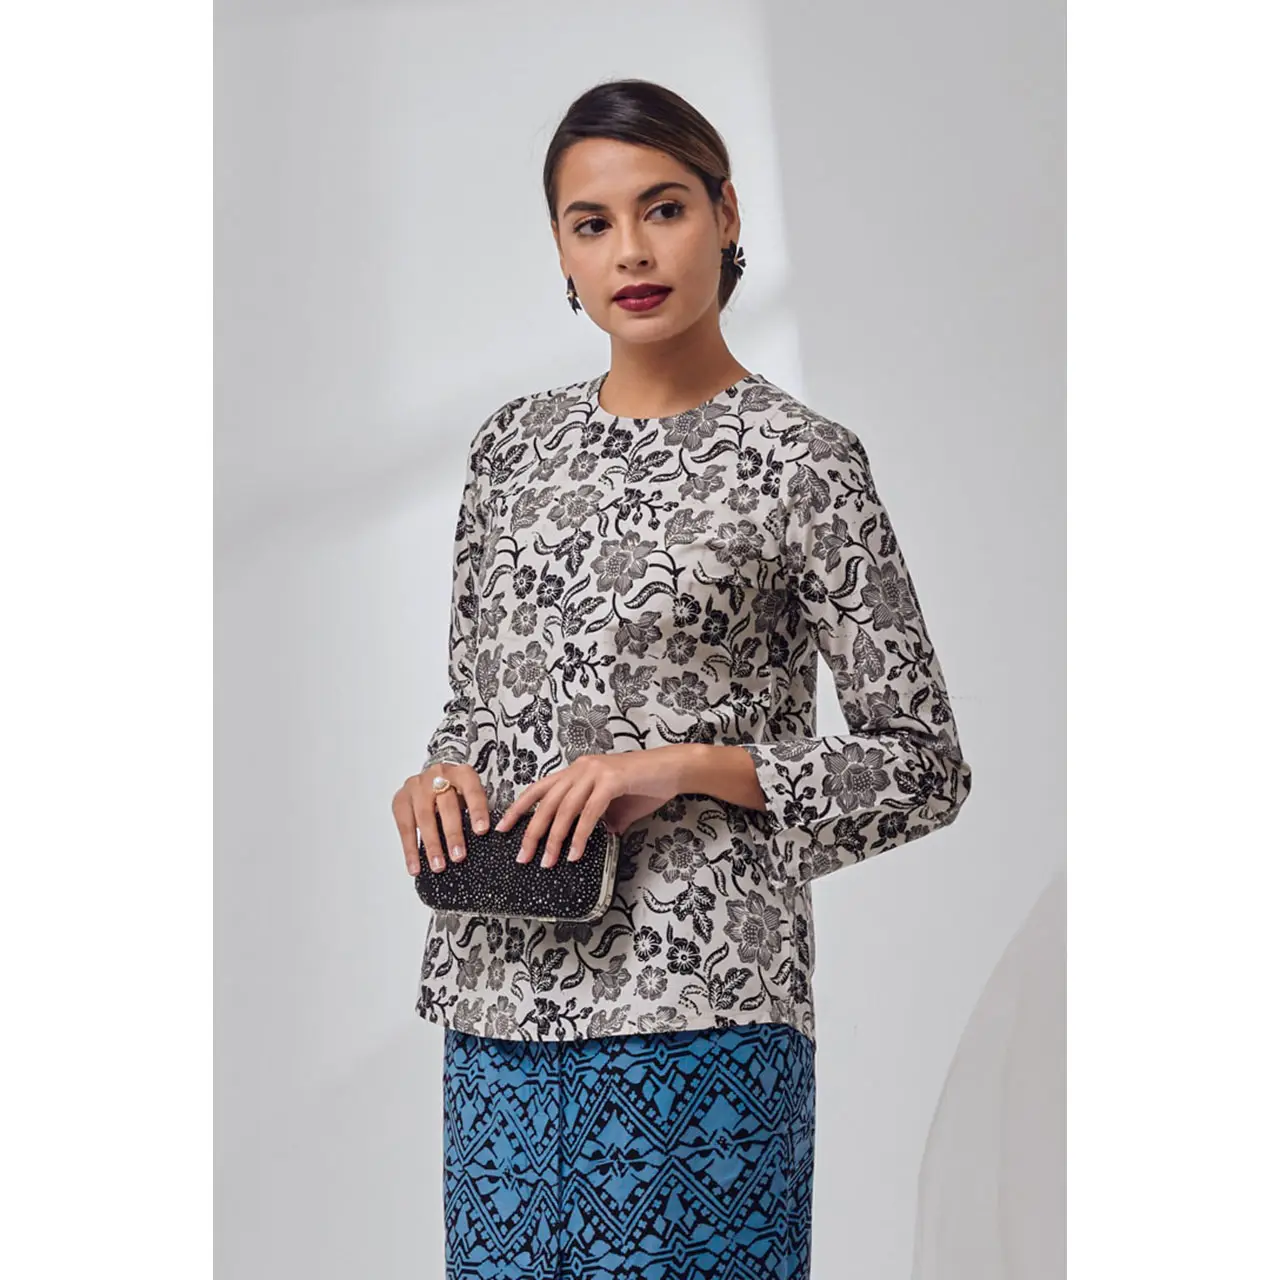 Prodotti caldi di moda moderna Baju Hotsale leggero Baju Wanita Baju Kurung malesia